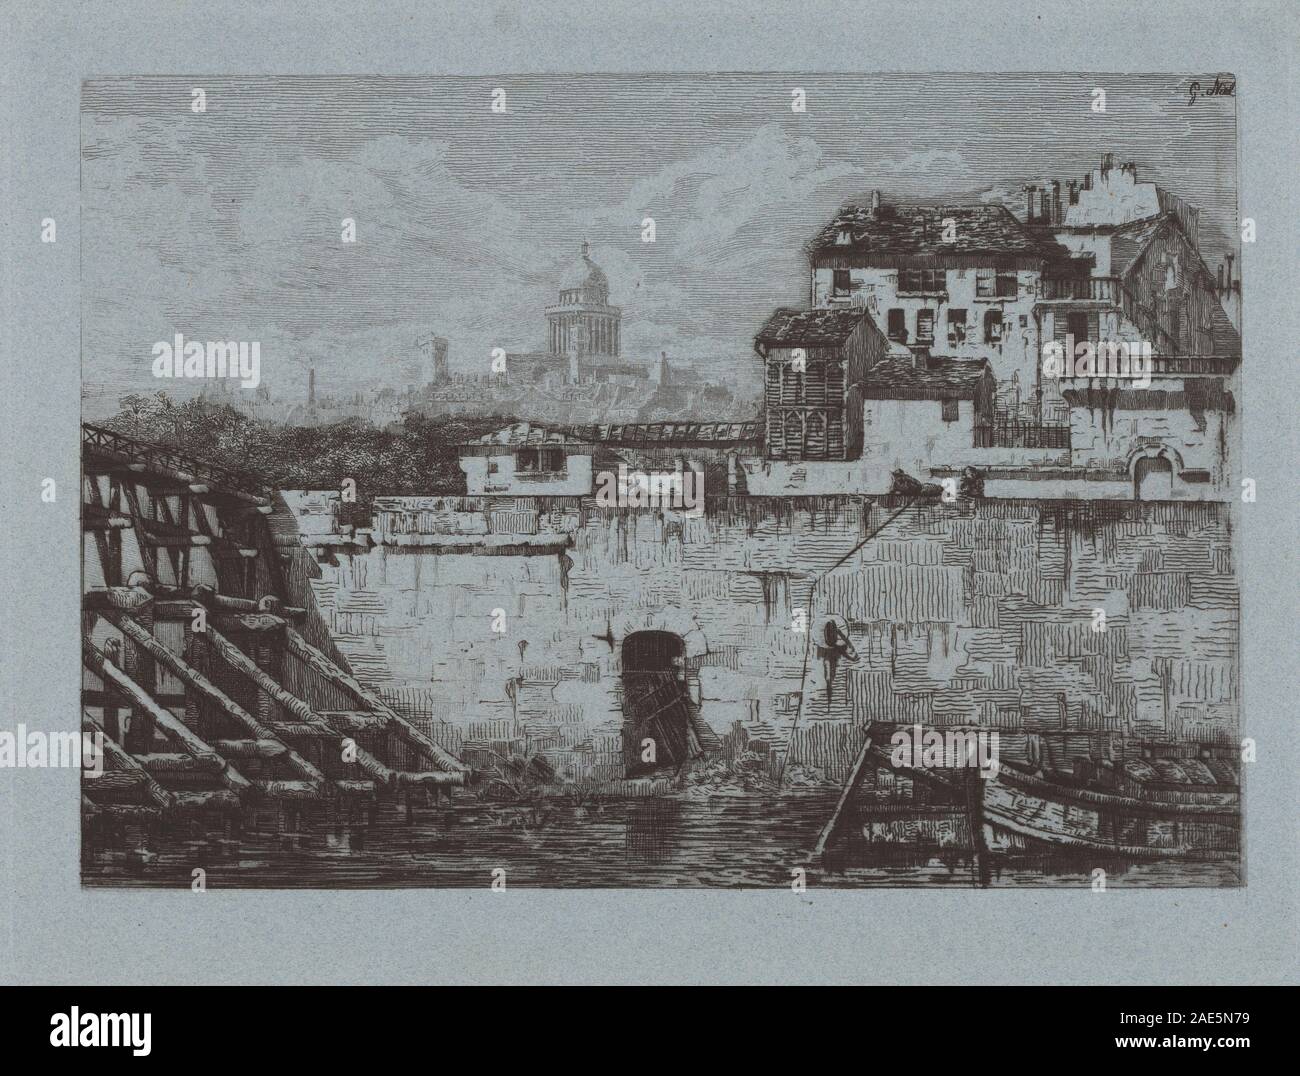 Ruines de l'Hôtel de Brentonvilliers, à la pointe de l'île Saint-Louis; 1875date Gabrielle-Marie Niel, Ruines de l'Hôtel de Brentonvilliers, à la pointe de l'île Saint-Louis, 1875 Stock Photo